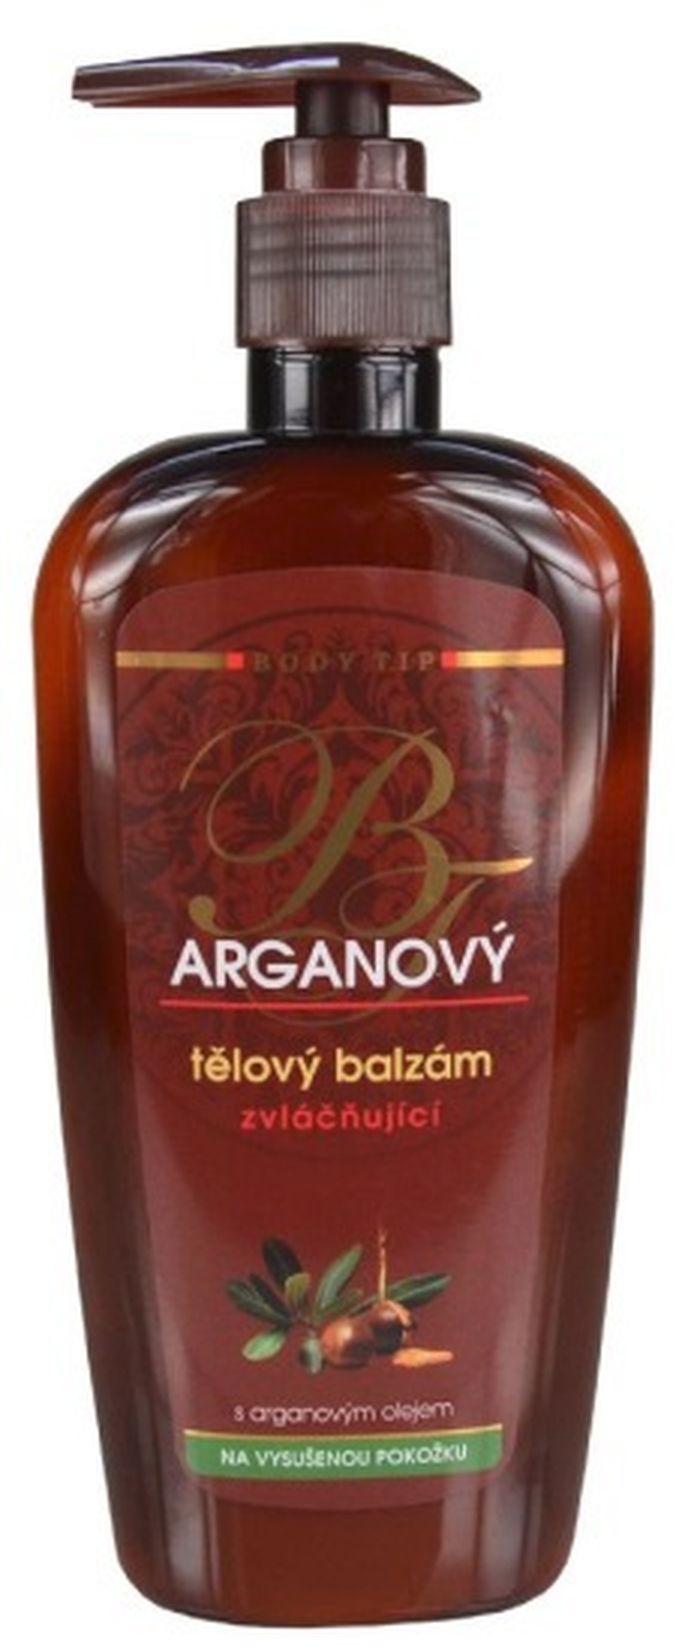 Arganový intenzivní tělový balzám BODY TIP, vivaco.cz, 109 Kč/300 ml